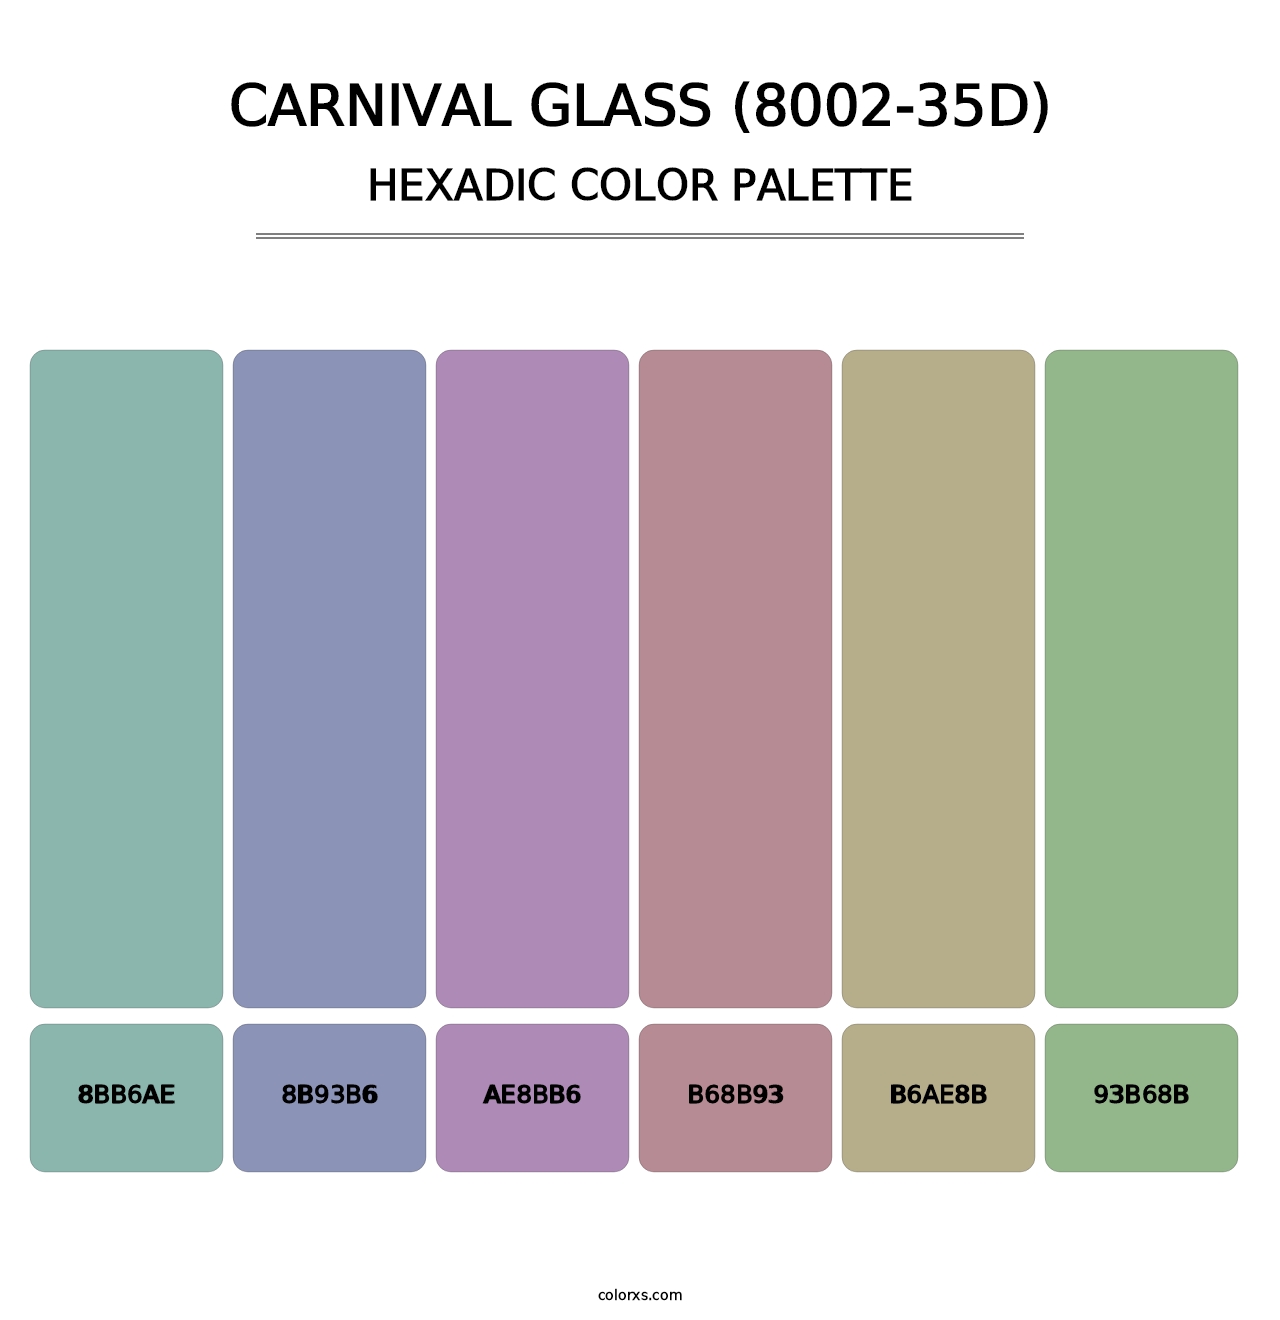 Carnival Glass (8002-35D) - Hexadic Color Palette